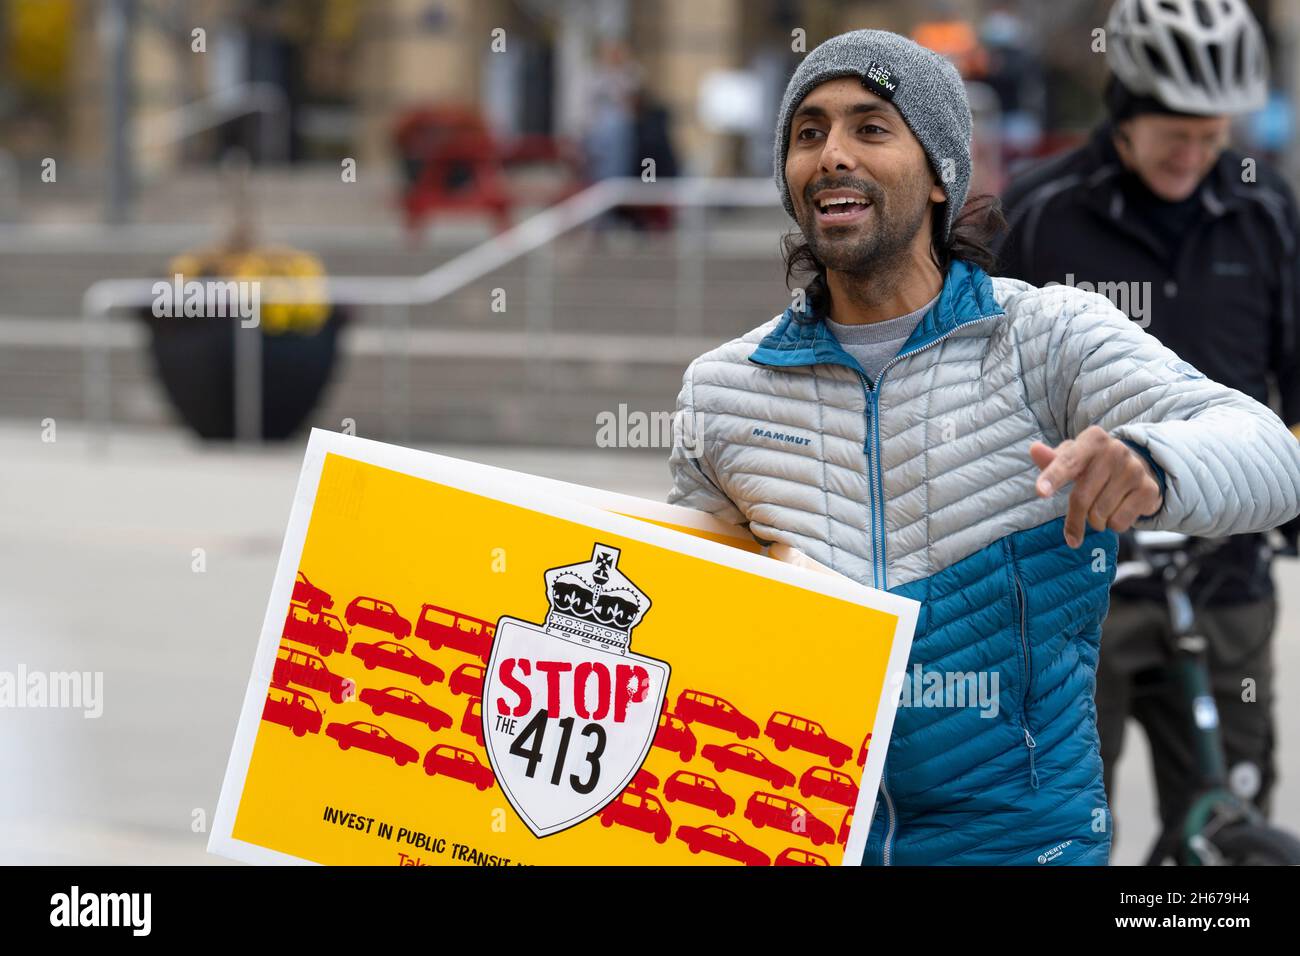 Rahul Mehta, organisateur du rassemblement de la Journée d'action à Mississauga, tient un panneau pour protester contre le projet d'autoroute 413, arrêt 413, en Ontario; le 13 2021 novembre Banque D'Images